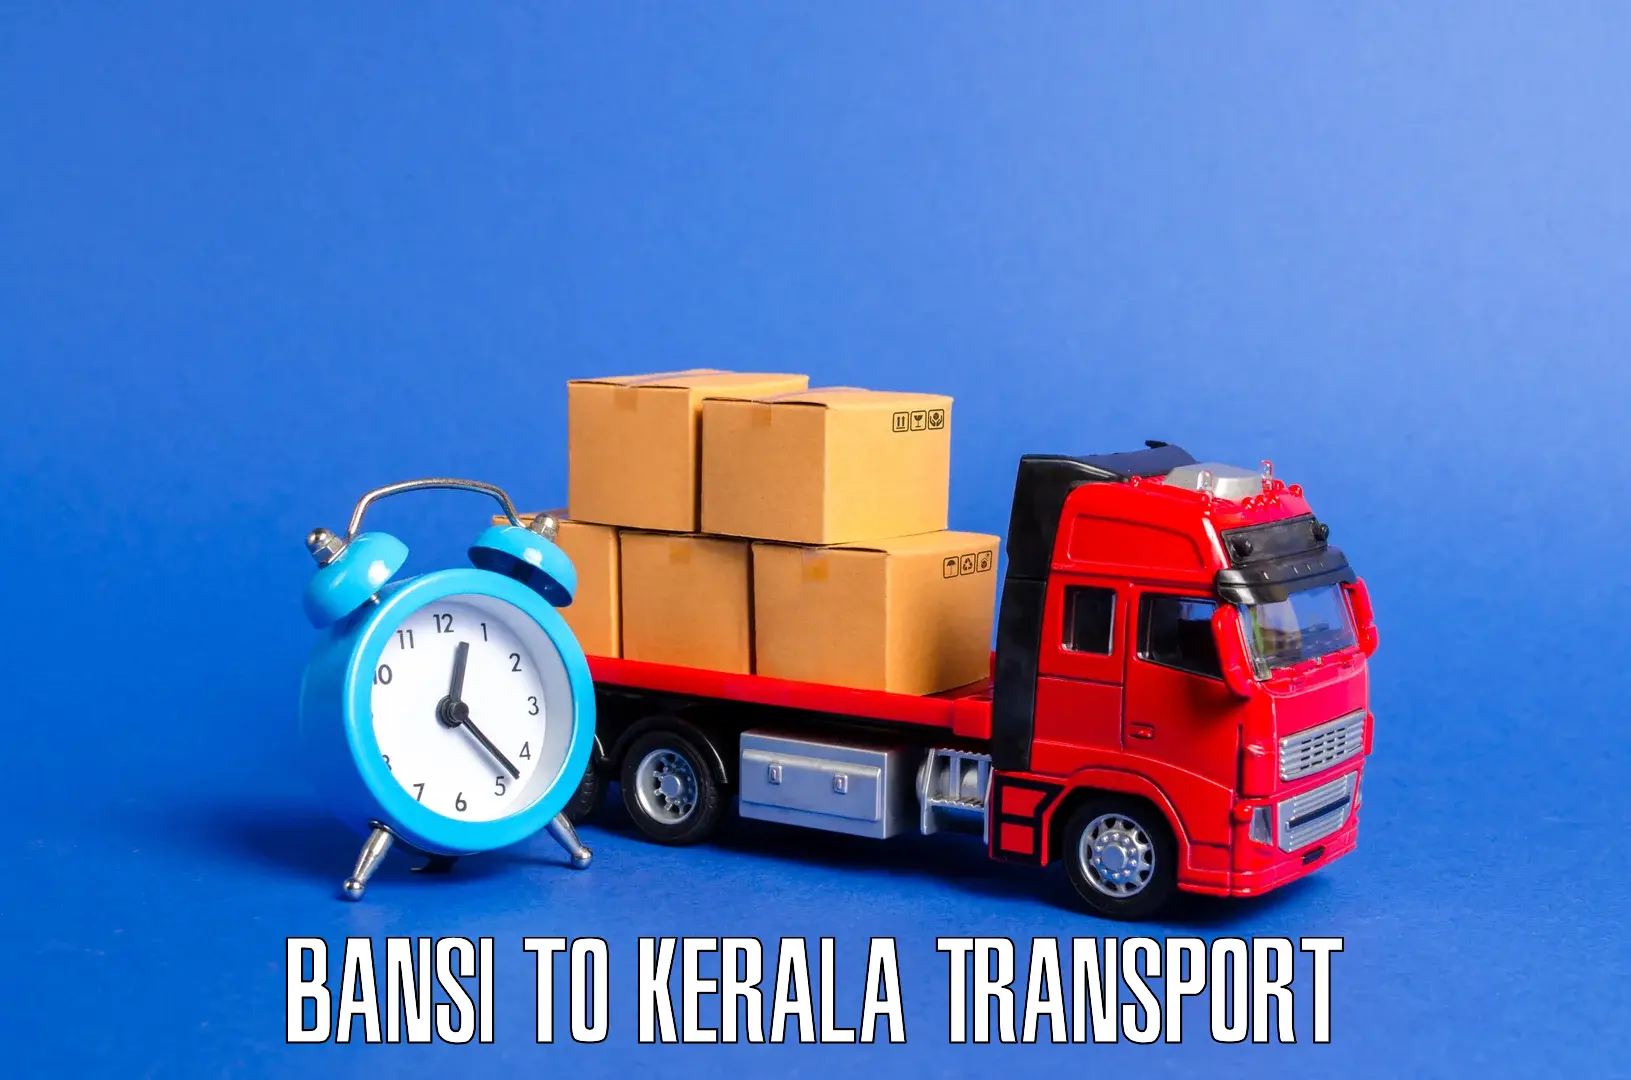 Online transport service Bansi to Kerala